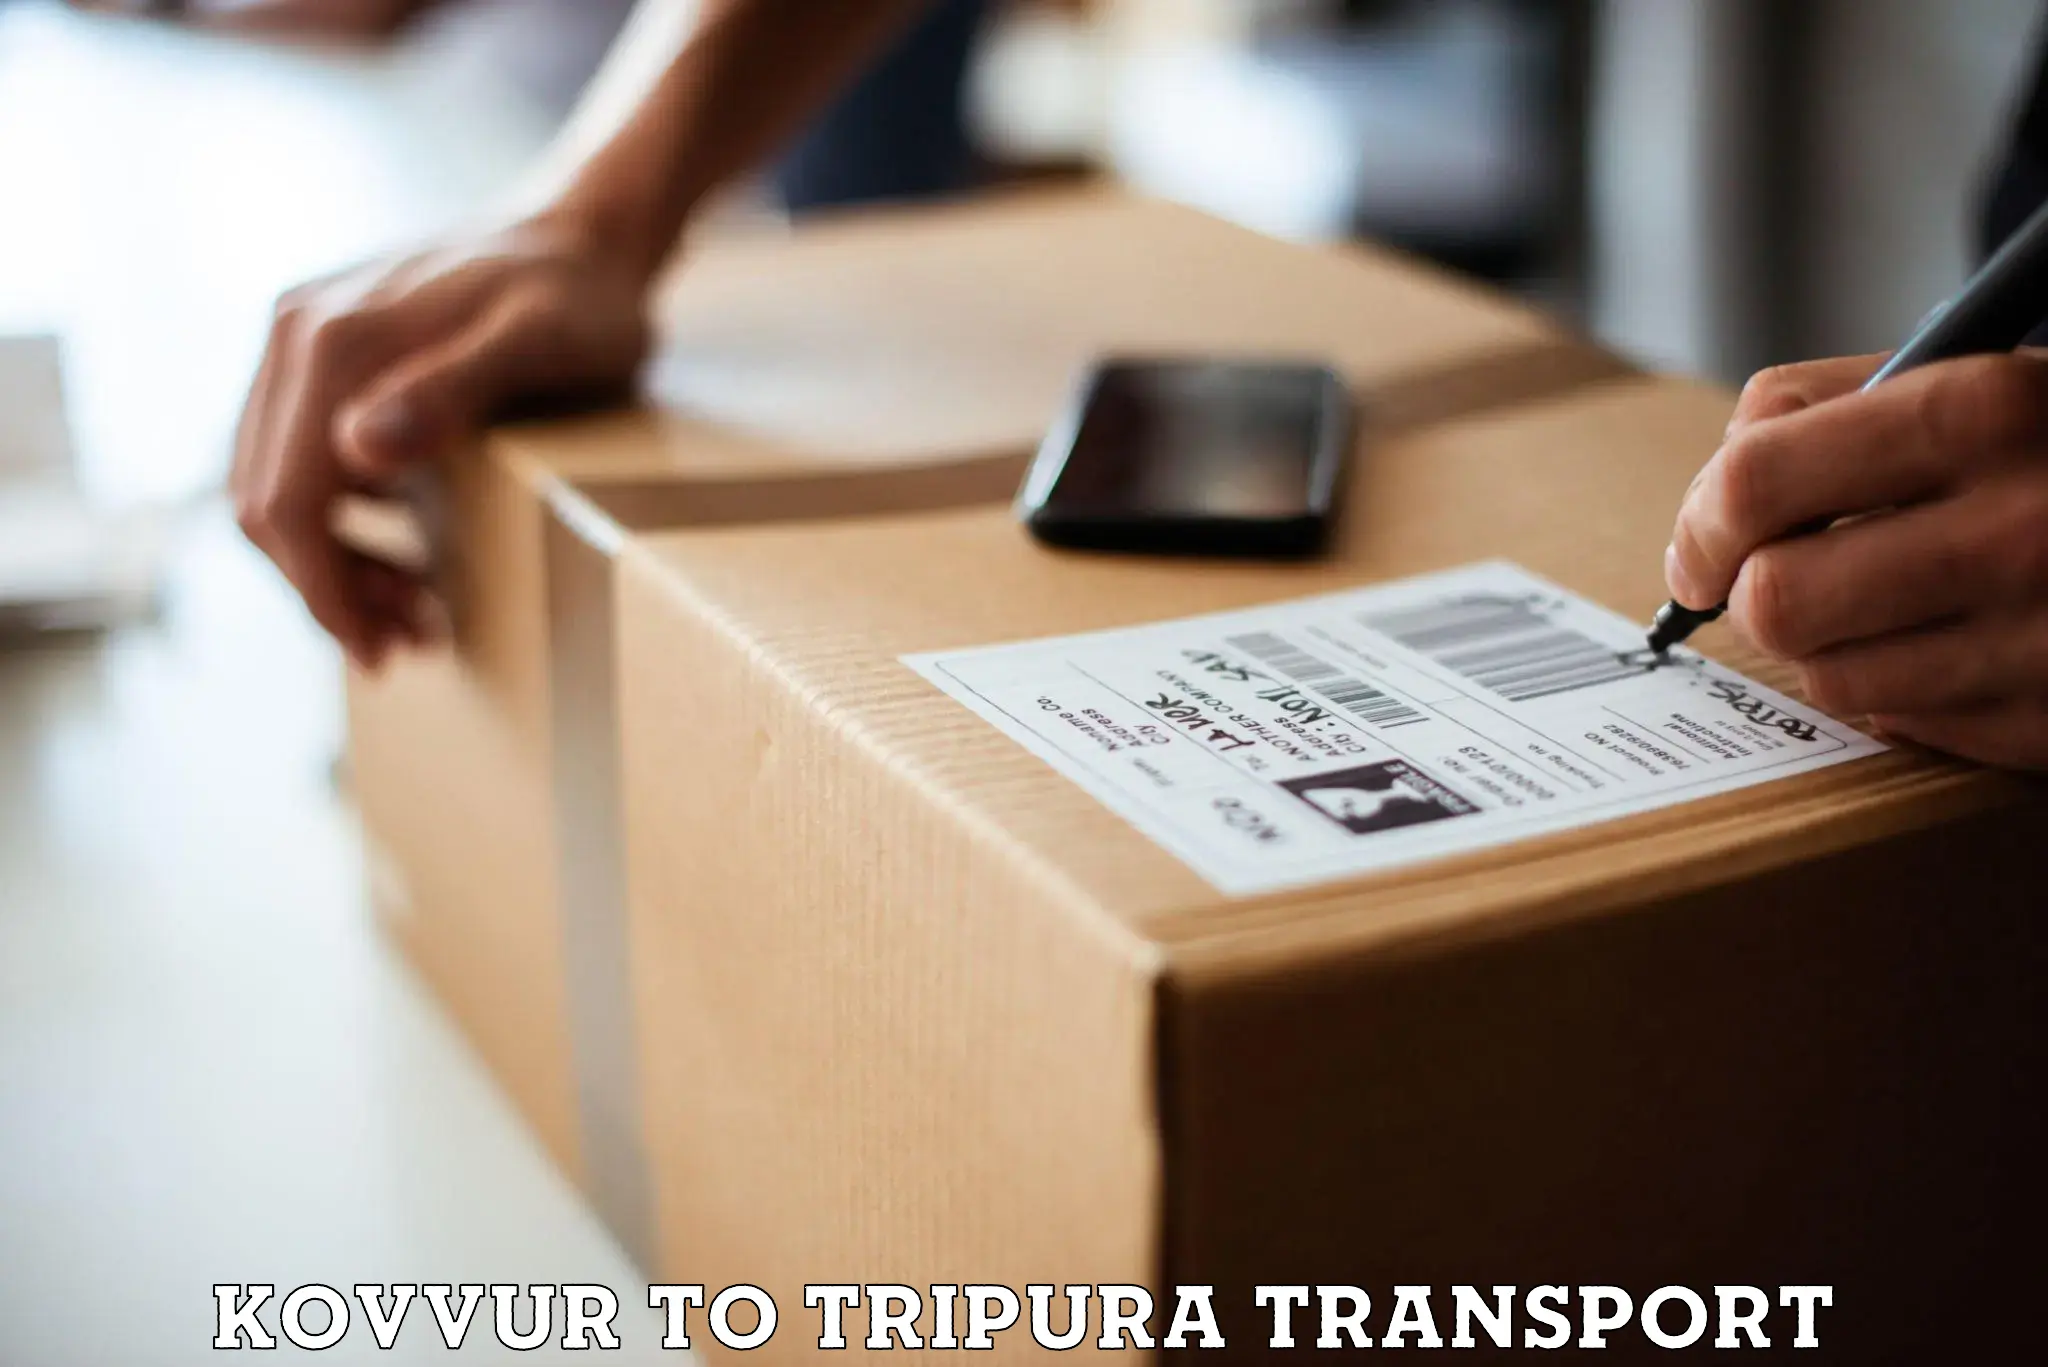 Cargo train transport services in Kovvur to Ambassa